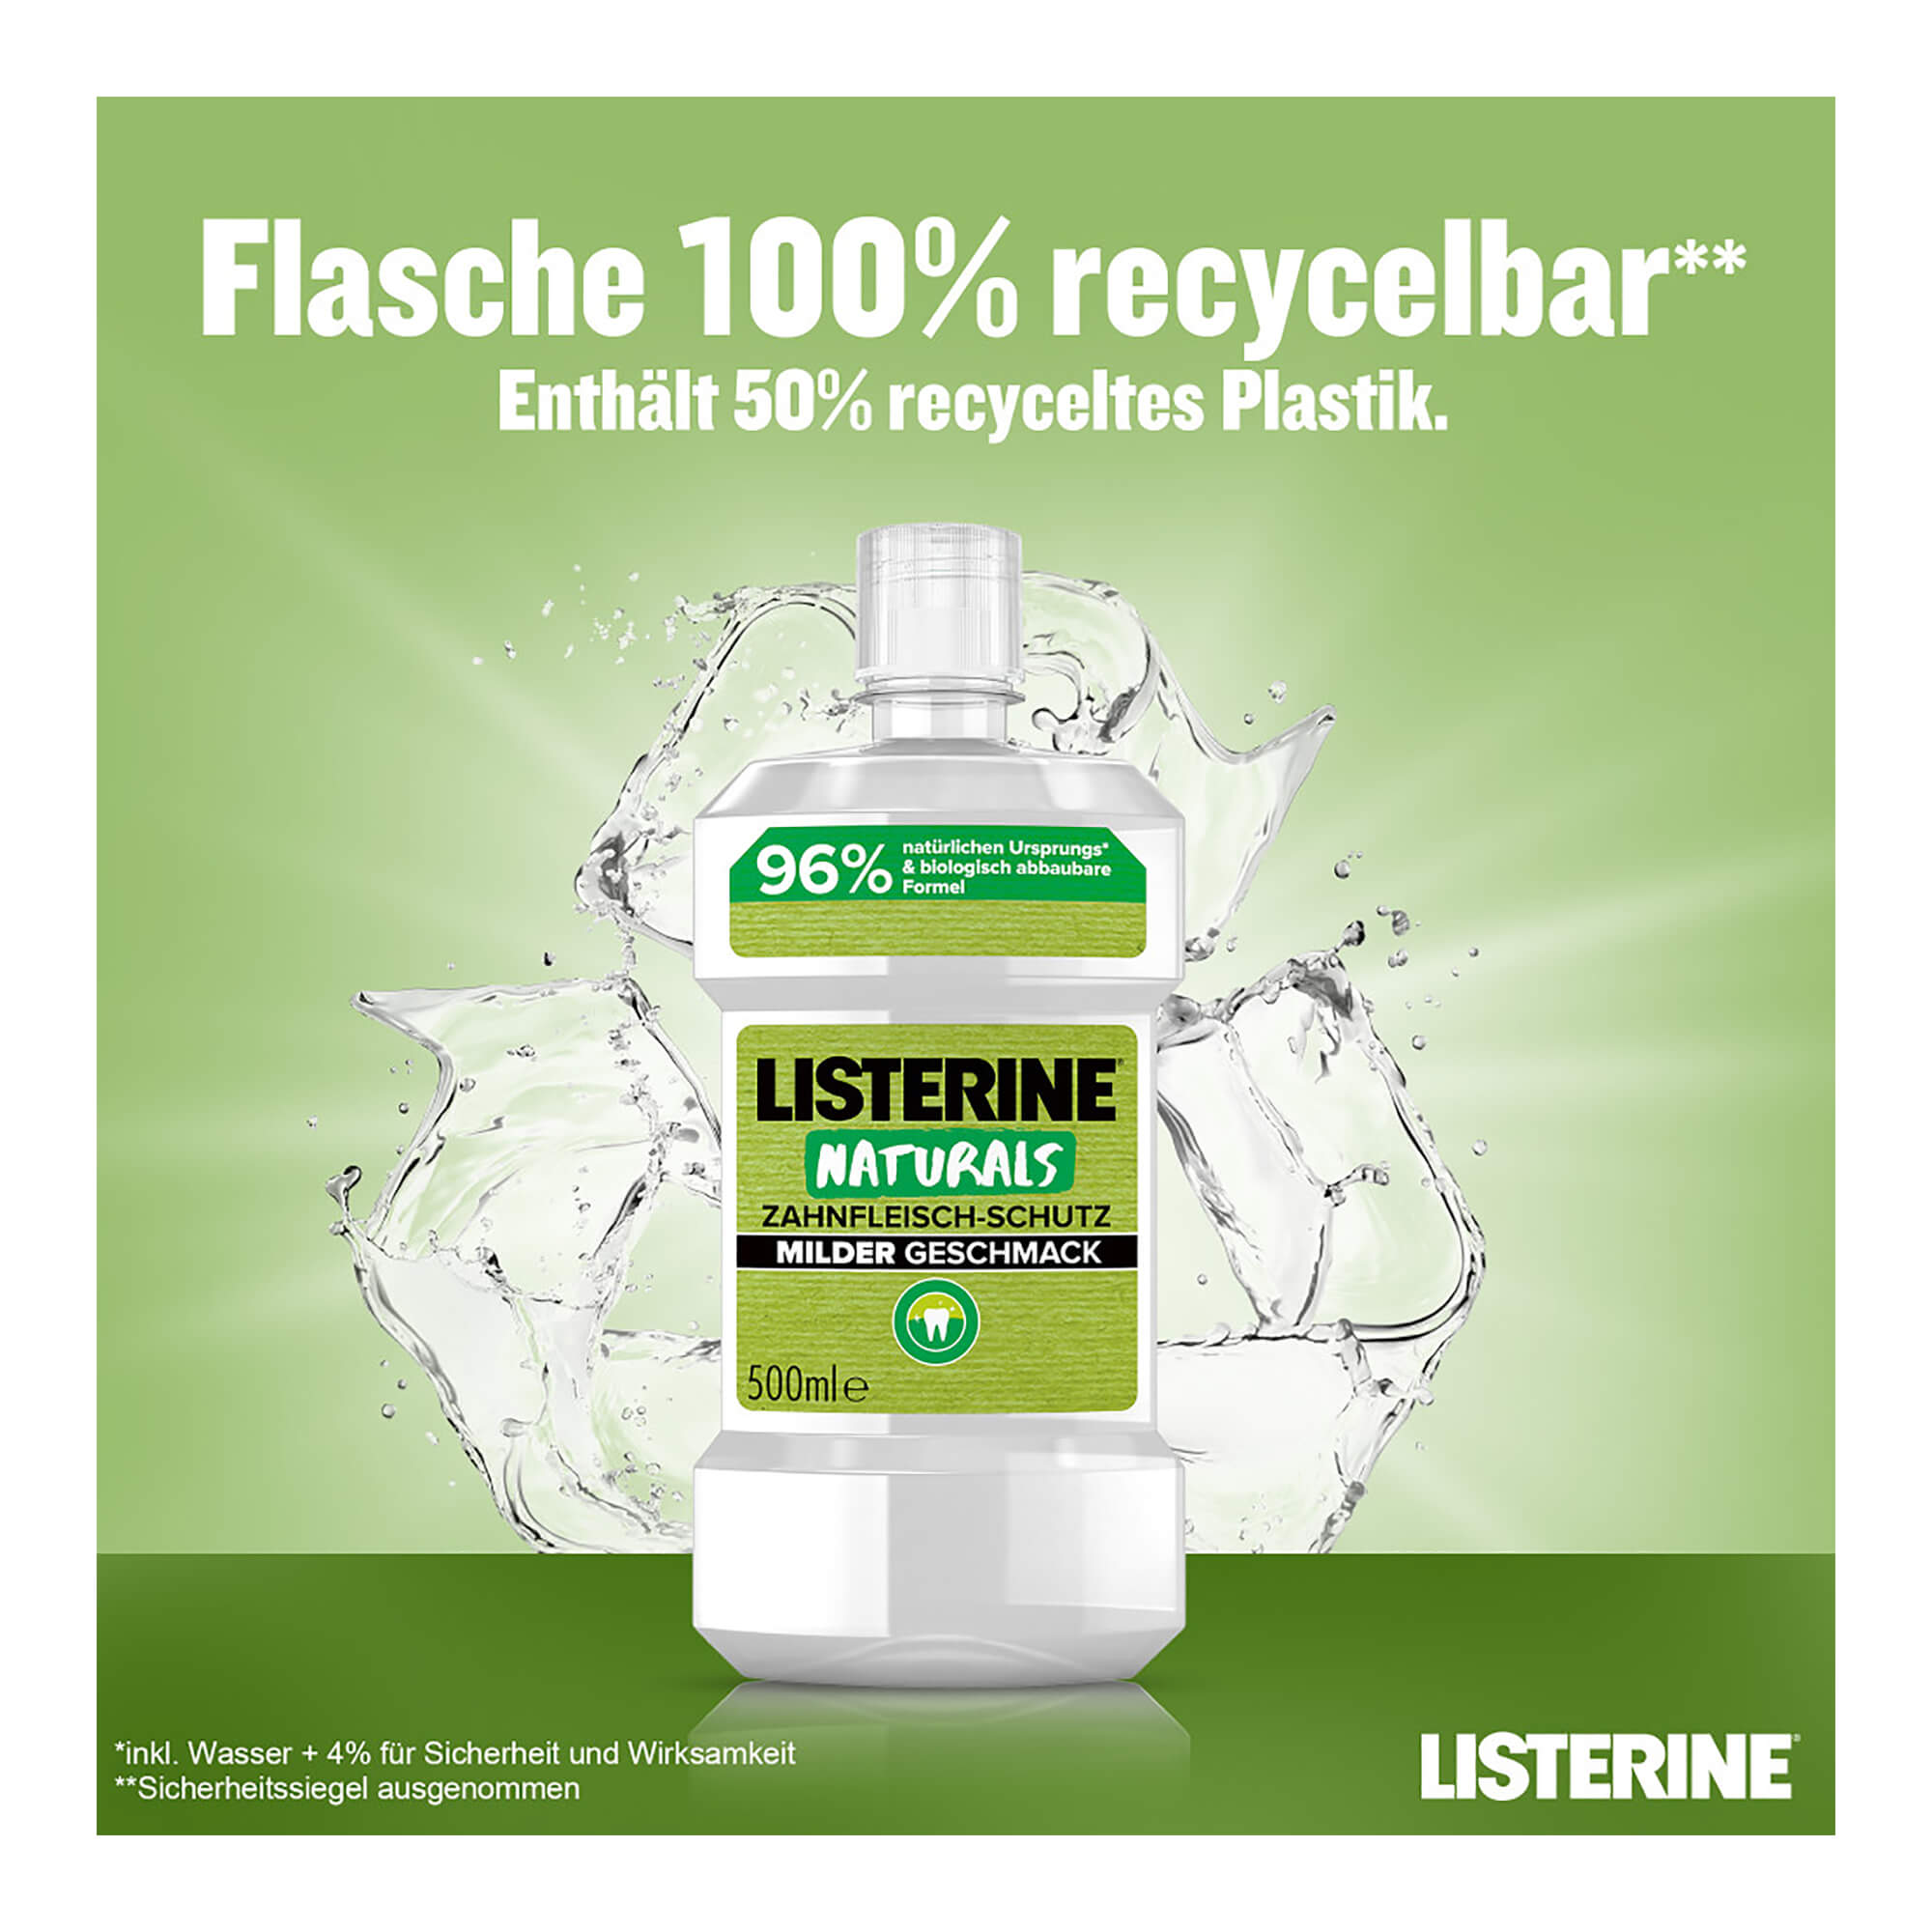 Listerine Naturals Zahnfleisch-Schutz recycelbar